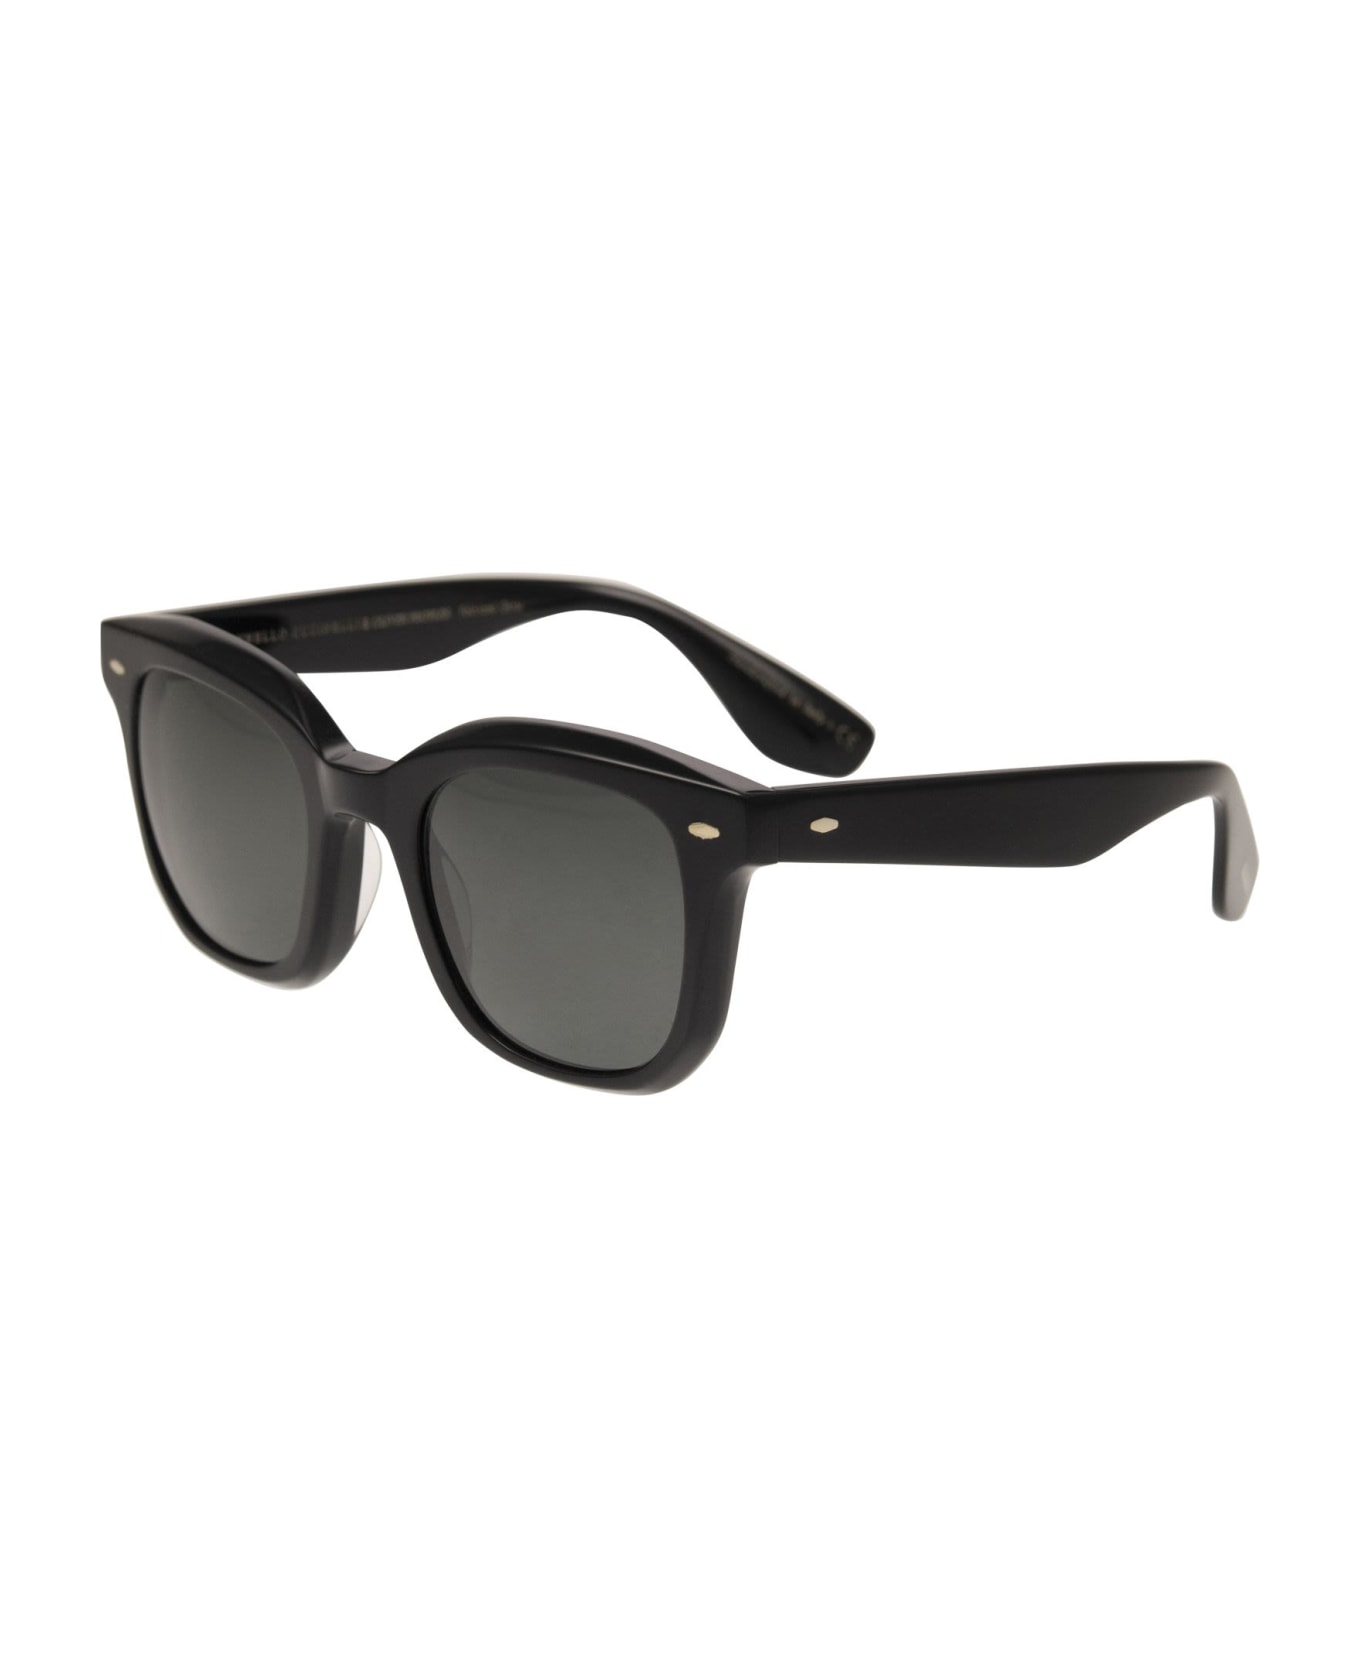 Brunello Cucinelli Acetate Filù Sunglasses With Classic Lenses - Black